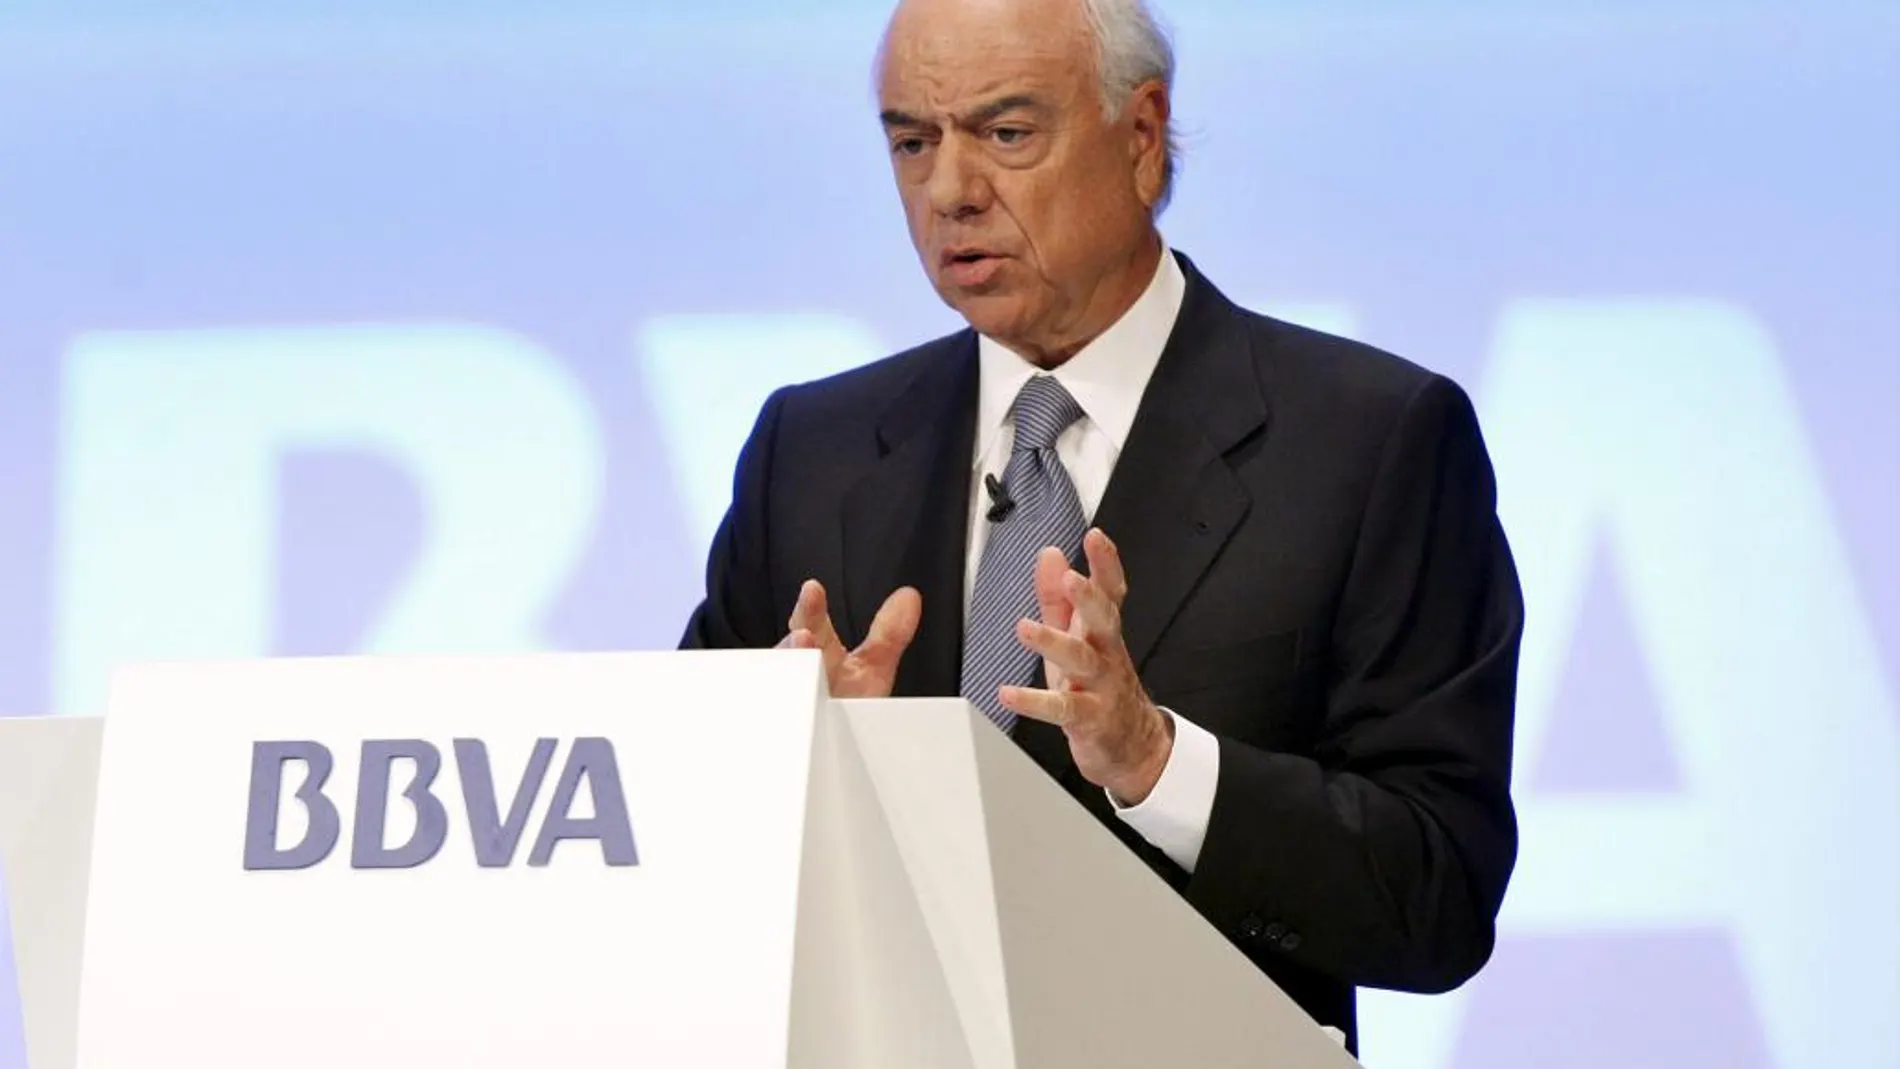 BBVA entra en el capital de Atom Bank tras comprar el 29,5% por 64,1 millones